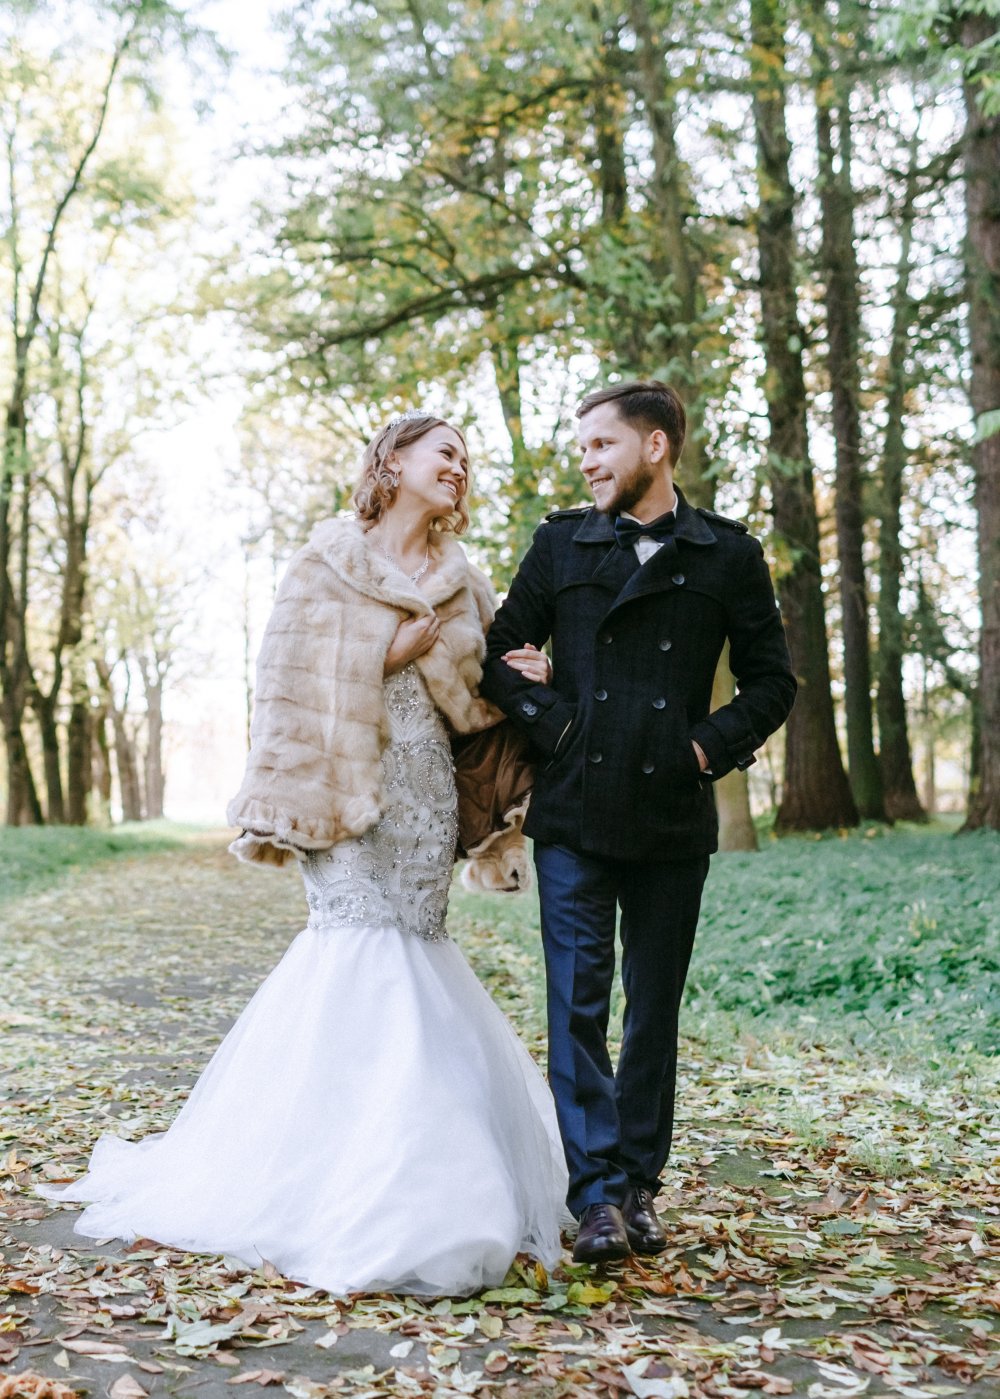 Осенний образ невесты и жениха